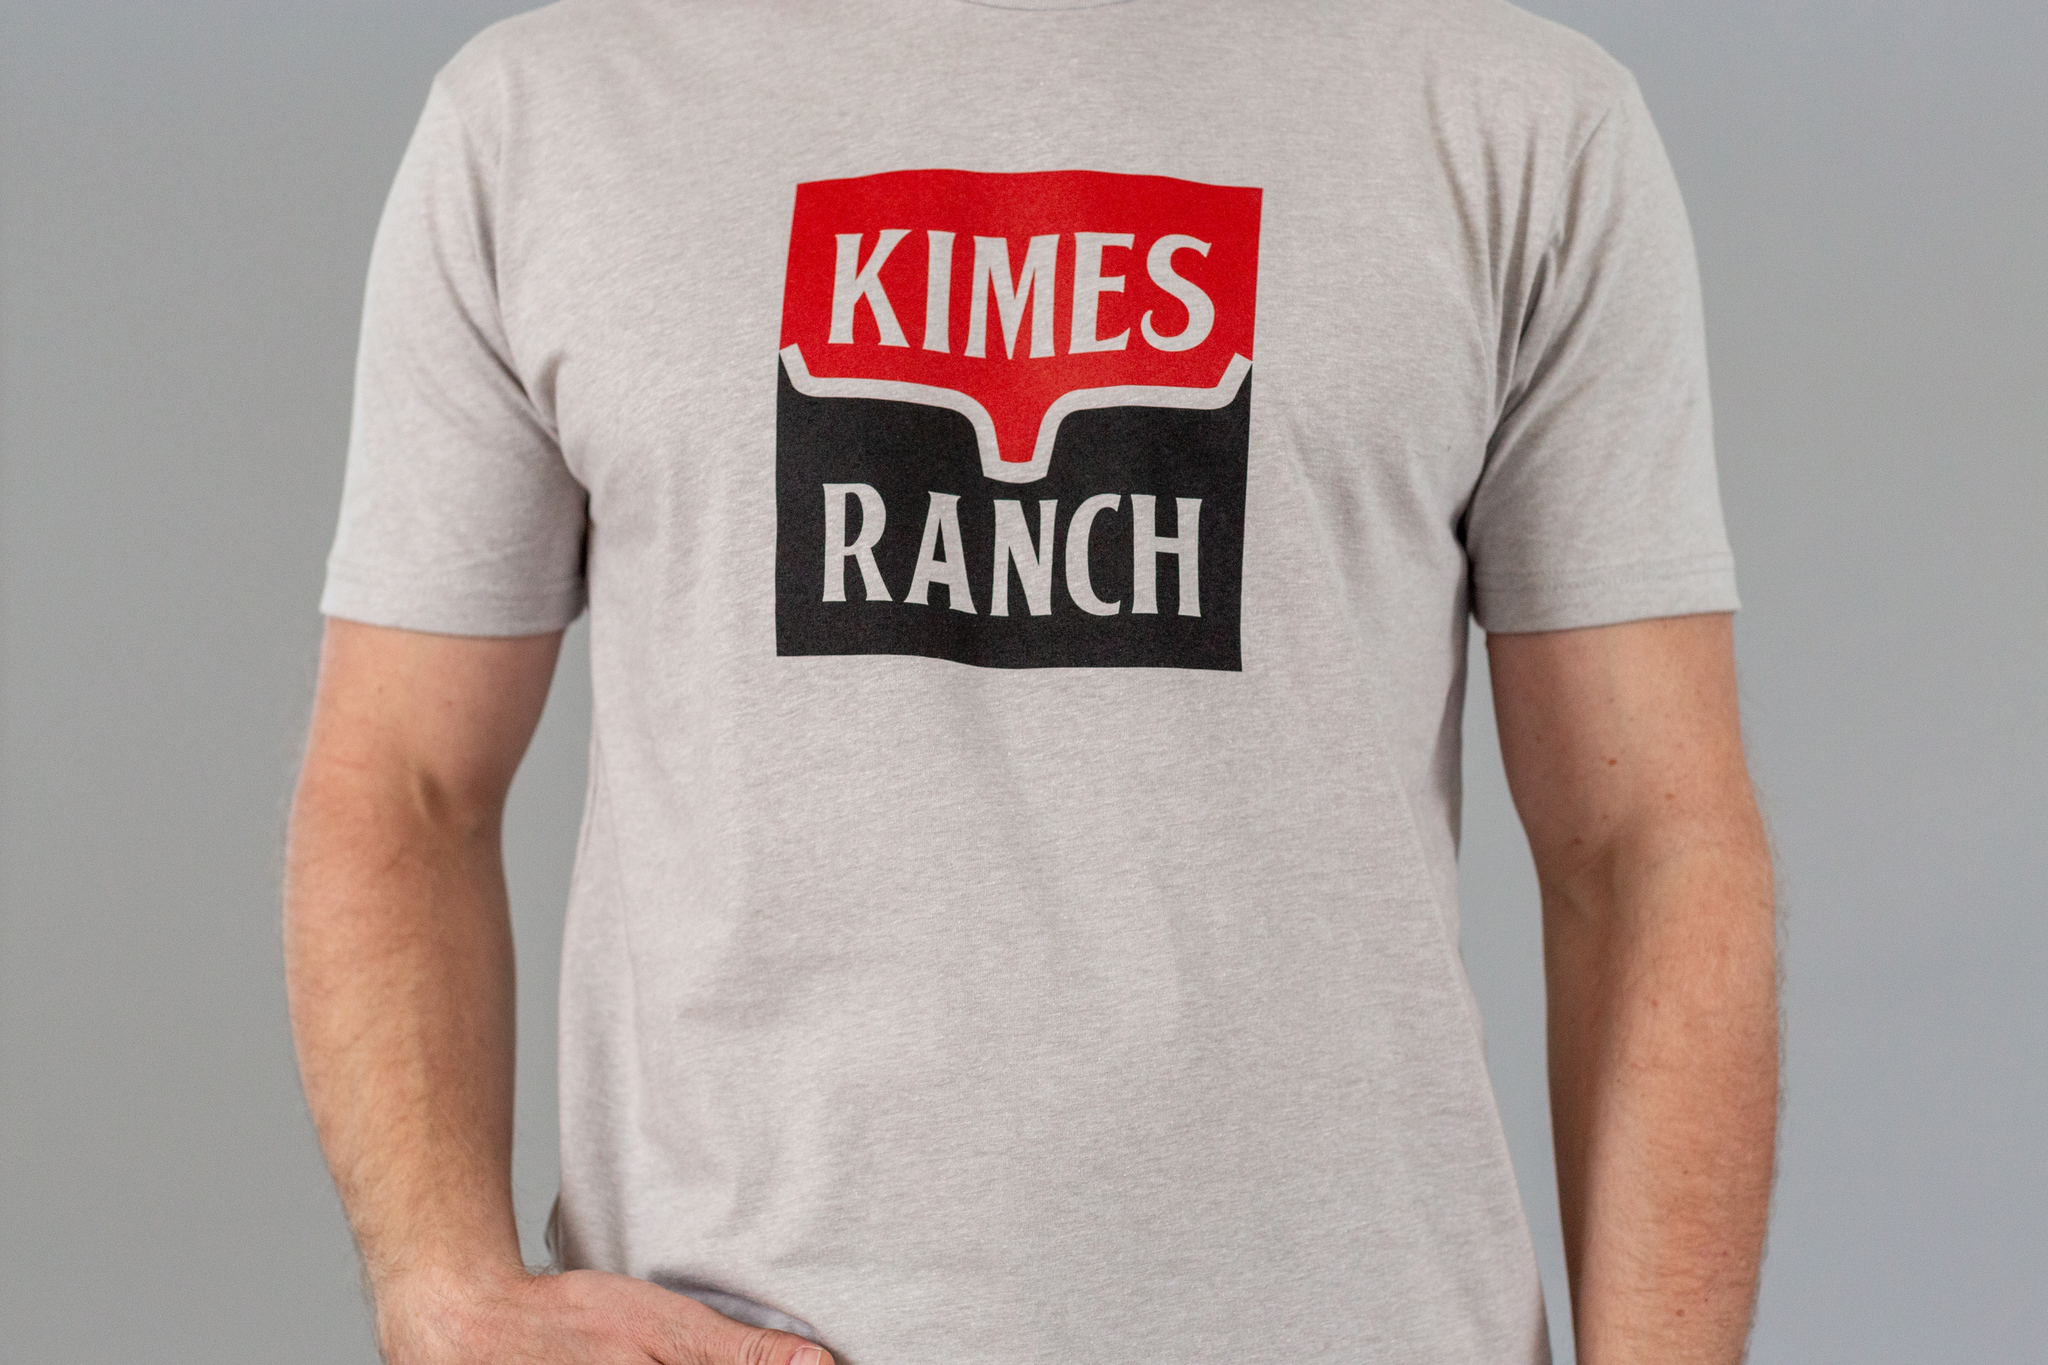 Kimes Ranch Explicit Warning Tee